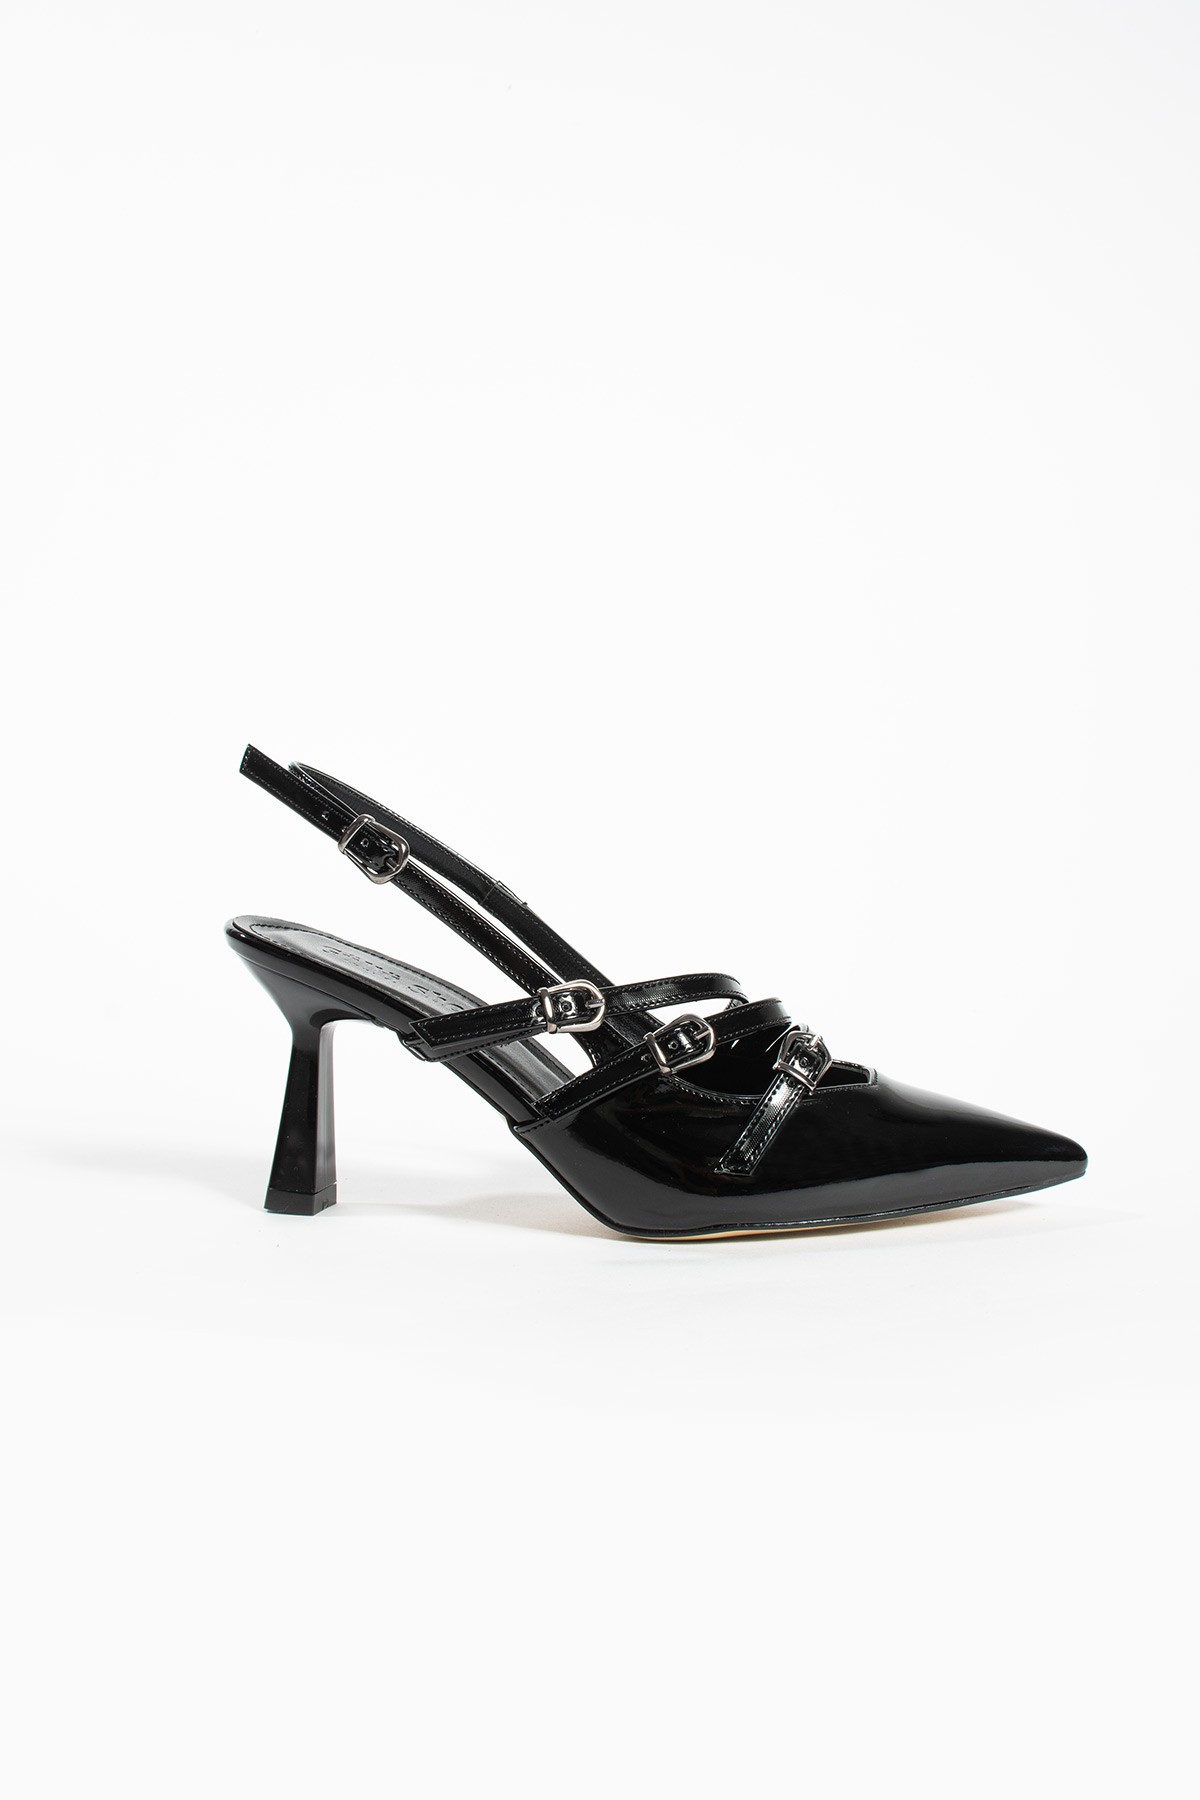 Kadın Topuklu Ayakkabı - 3 Bantlı Toka Detaylı Stiletto Rahat Şık ve Modern - 8cm